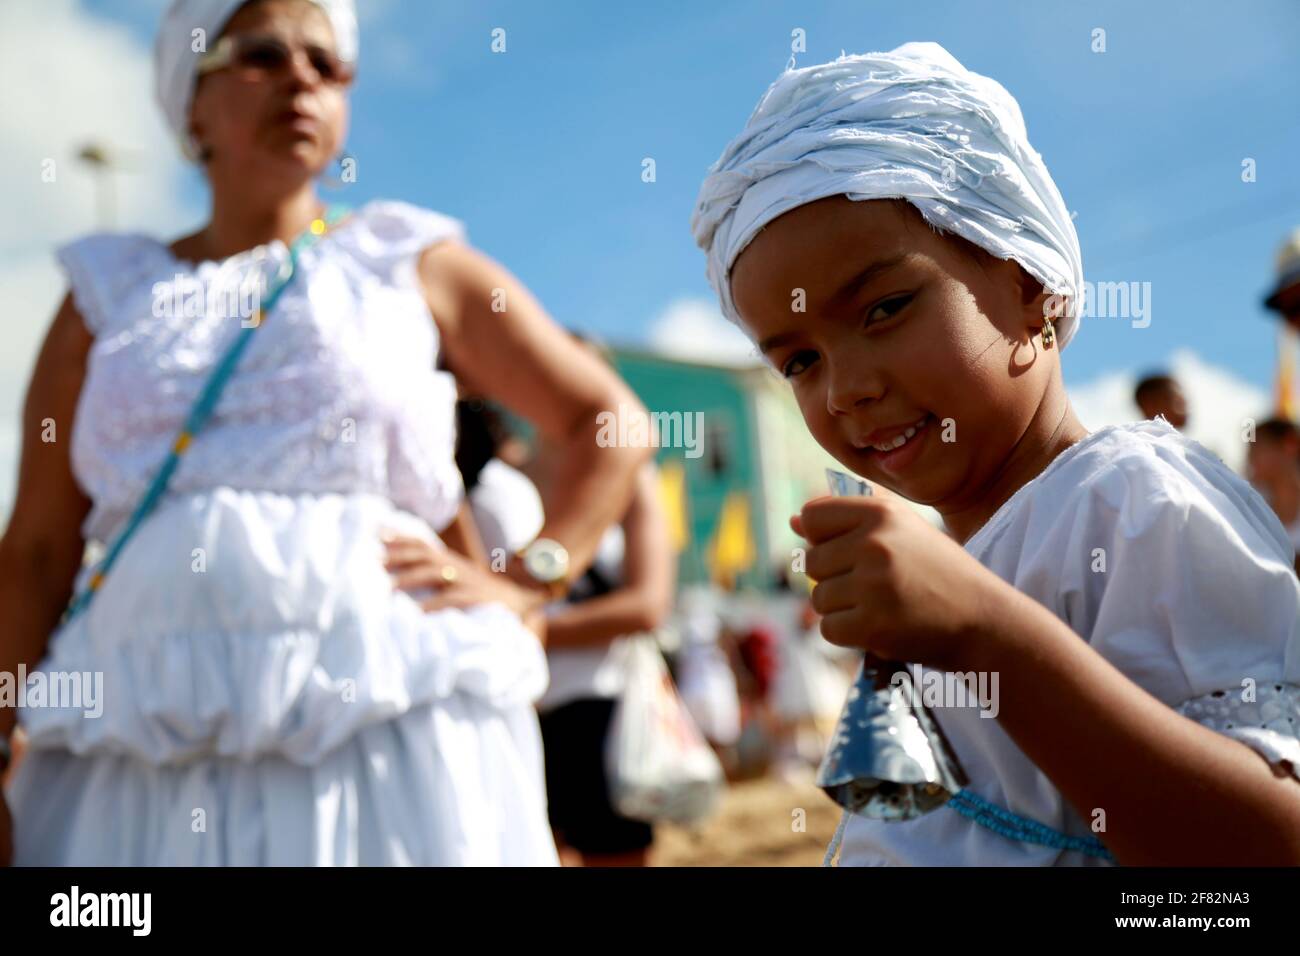 salvador, bahia / brésil - 2 février 2015: Les supporters de candomble sont vus sur la plage Rio Vermelho dans la ville de Salvador lors d'une fête à hono Banque D'Images